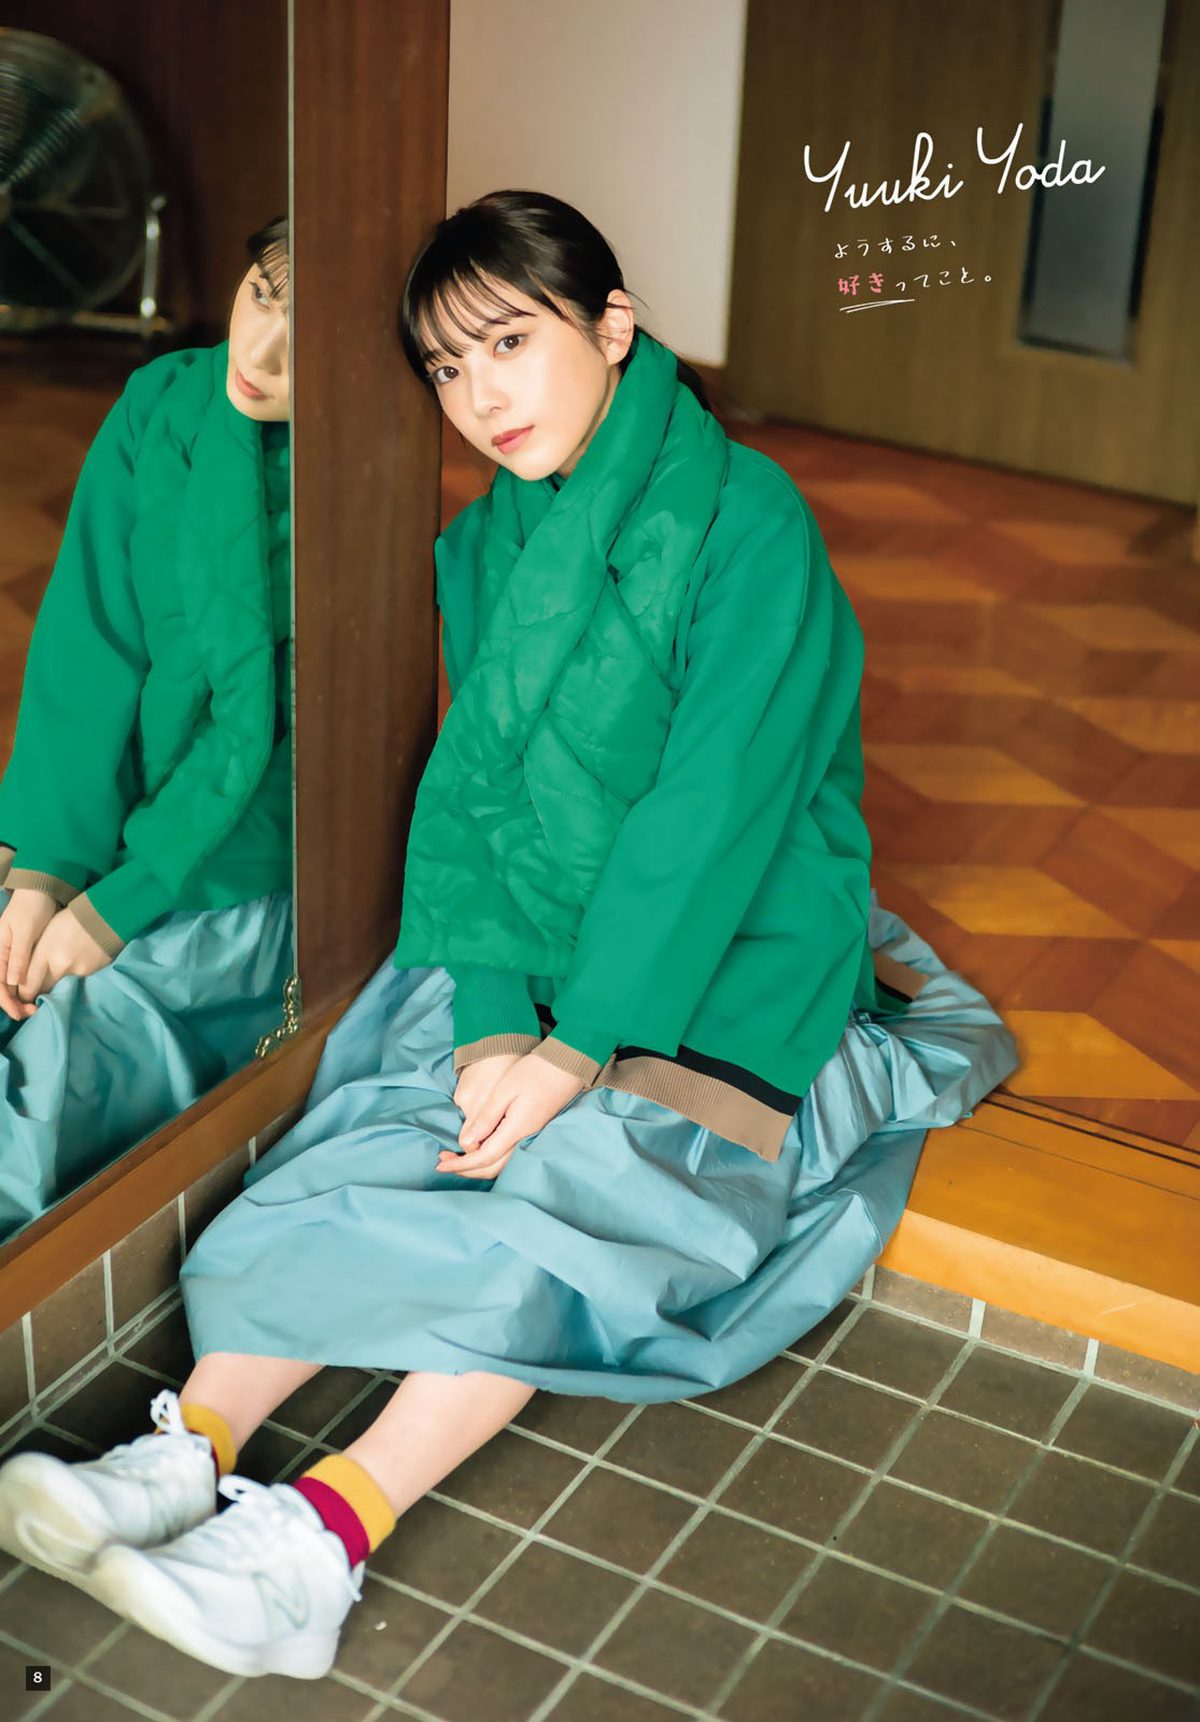 Shonen Magazine 2024 No 04 05 Nogizaka46 Yuuki Yoda 与田祐希 0008 2462446011.jpg